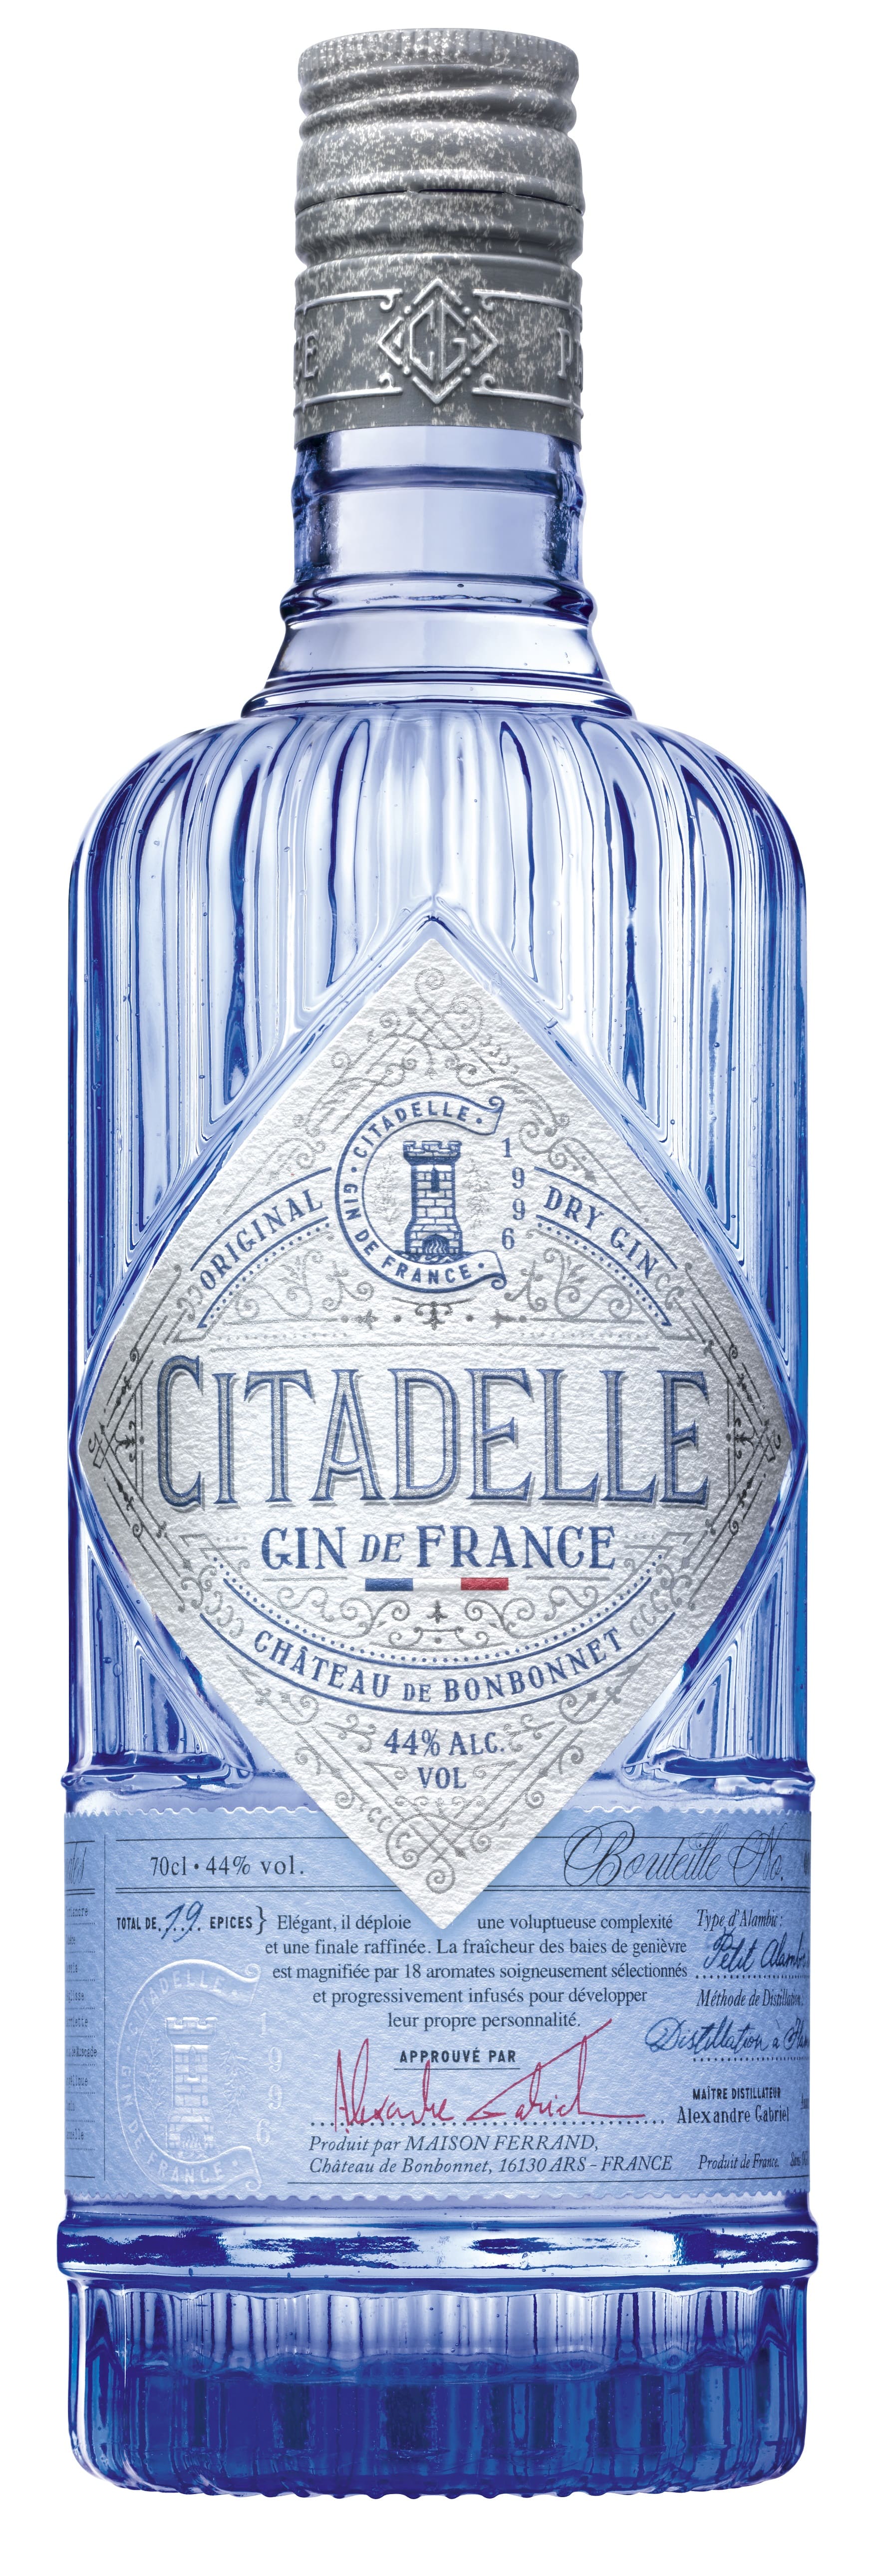 Citadelle Gin de France 0,7l 44%vol.